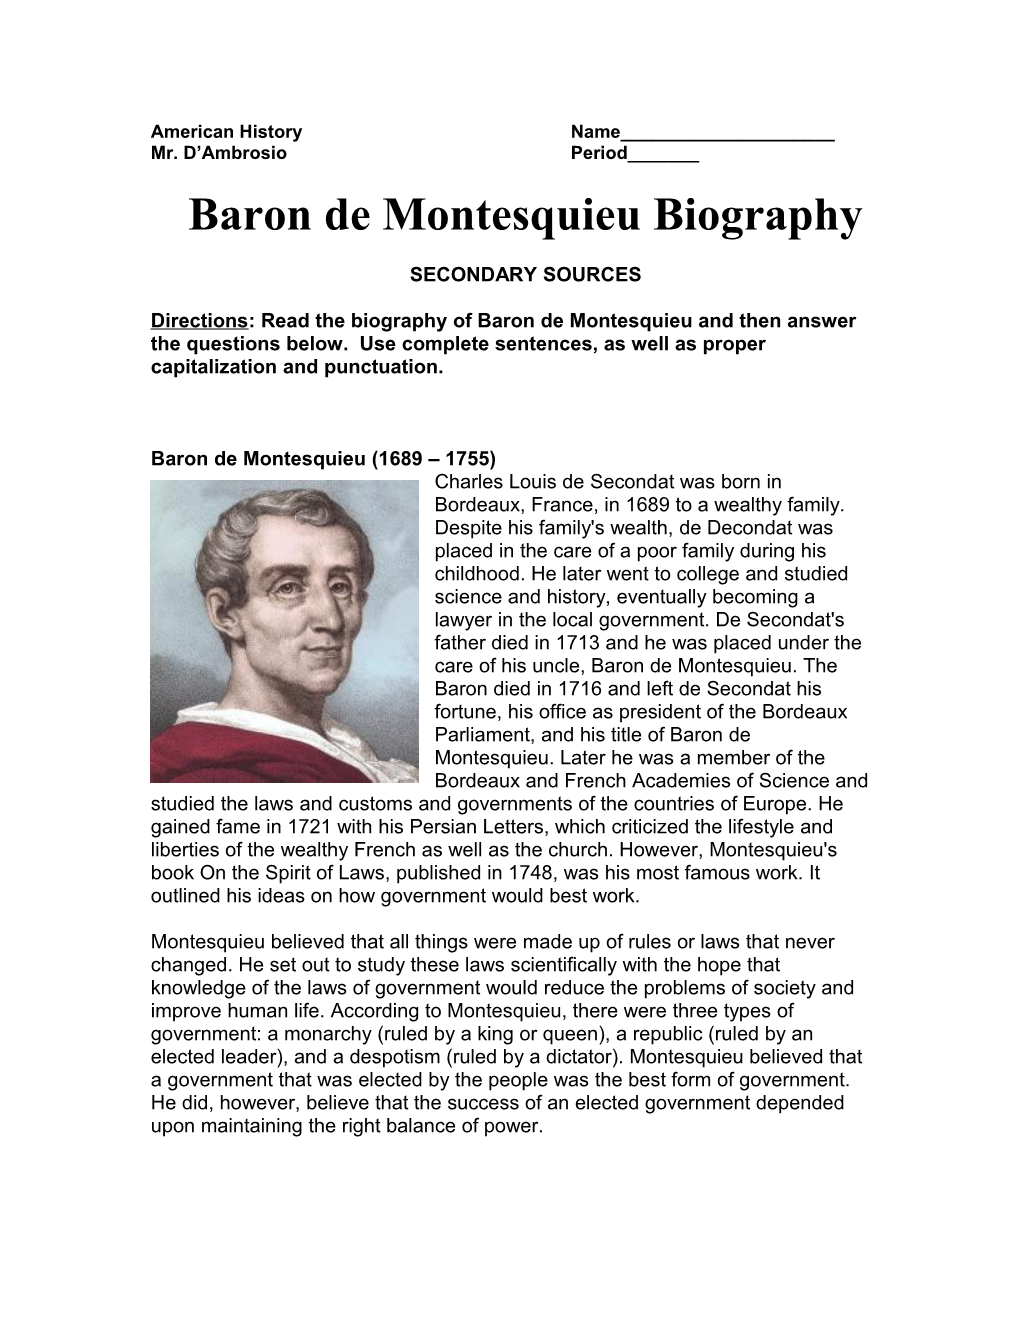 Baron De Montesquieu Biography